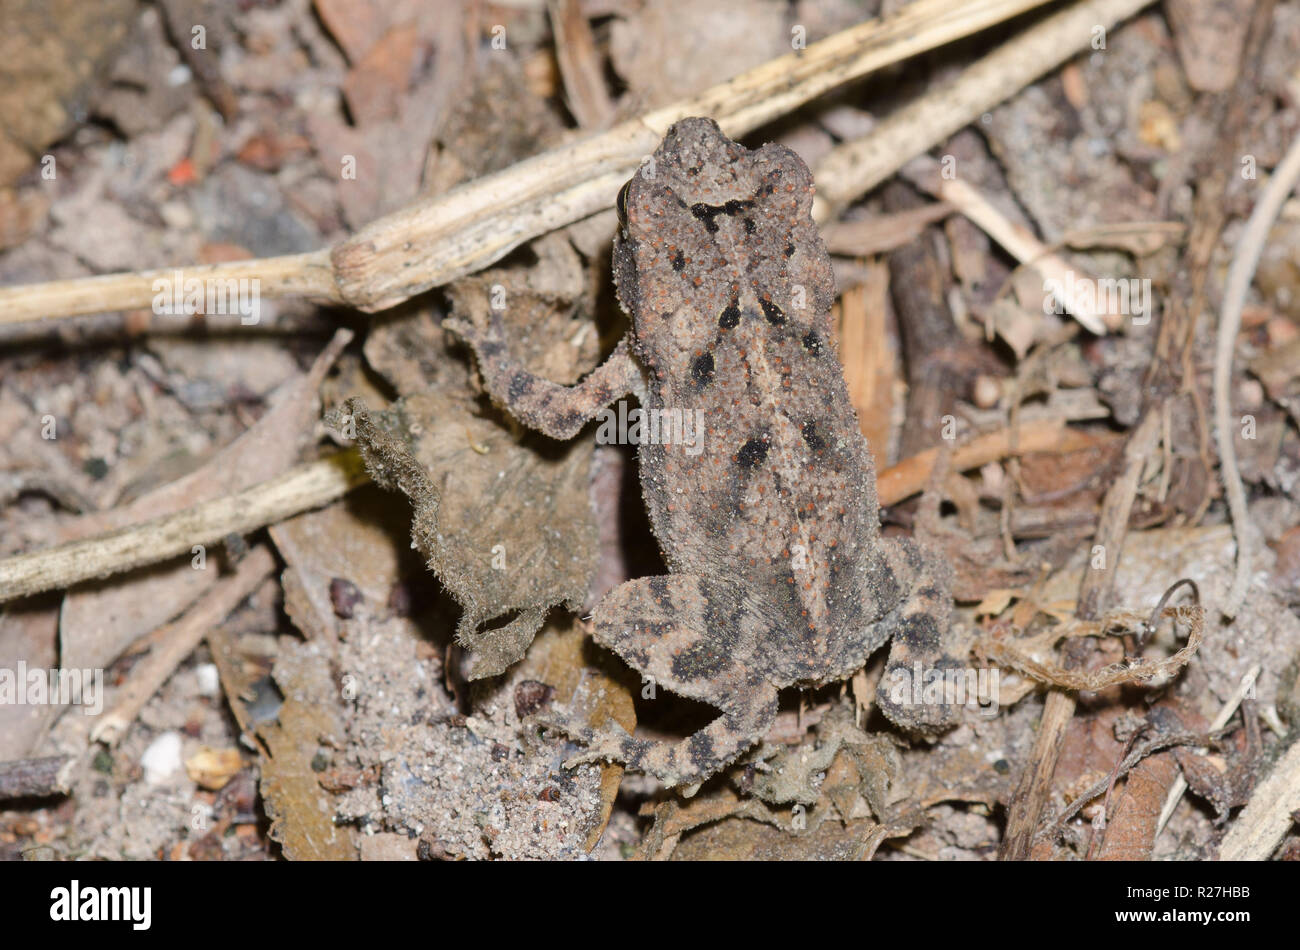 Cane Toad, Rhinella marina, juvenile camouflaged on ground Stock Photo